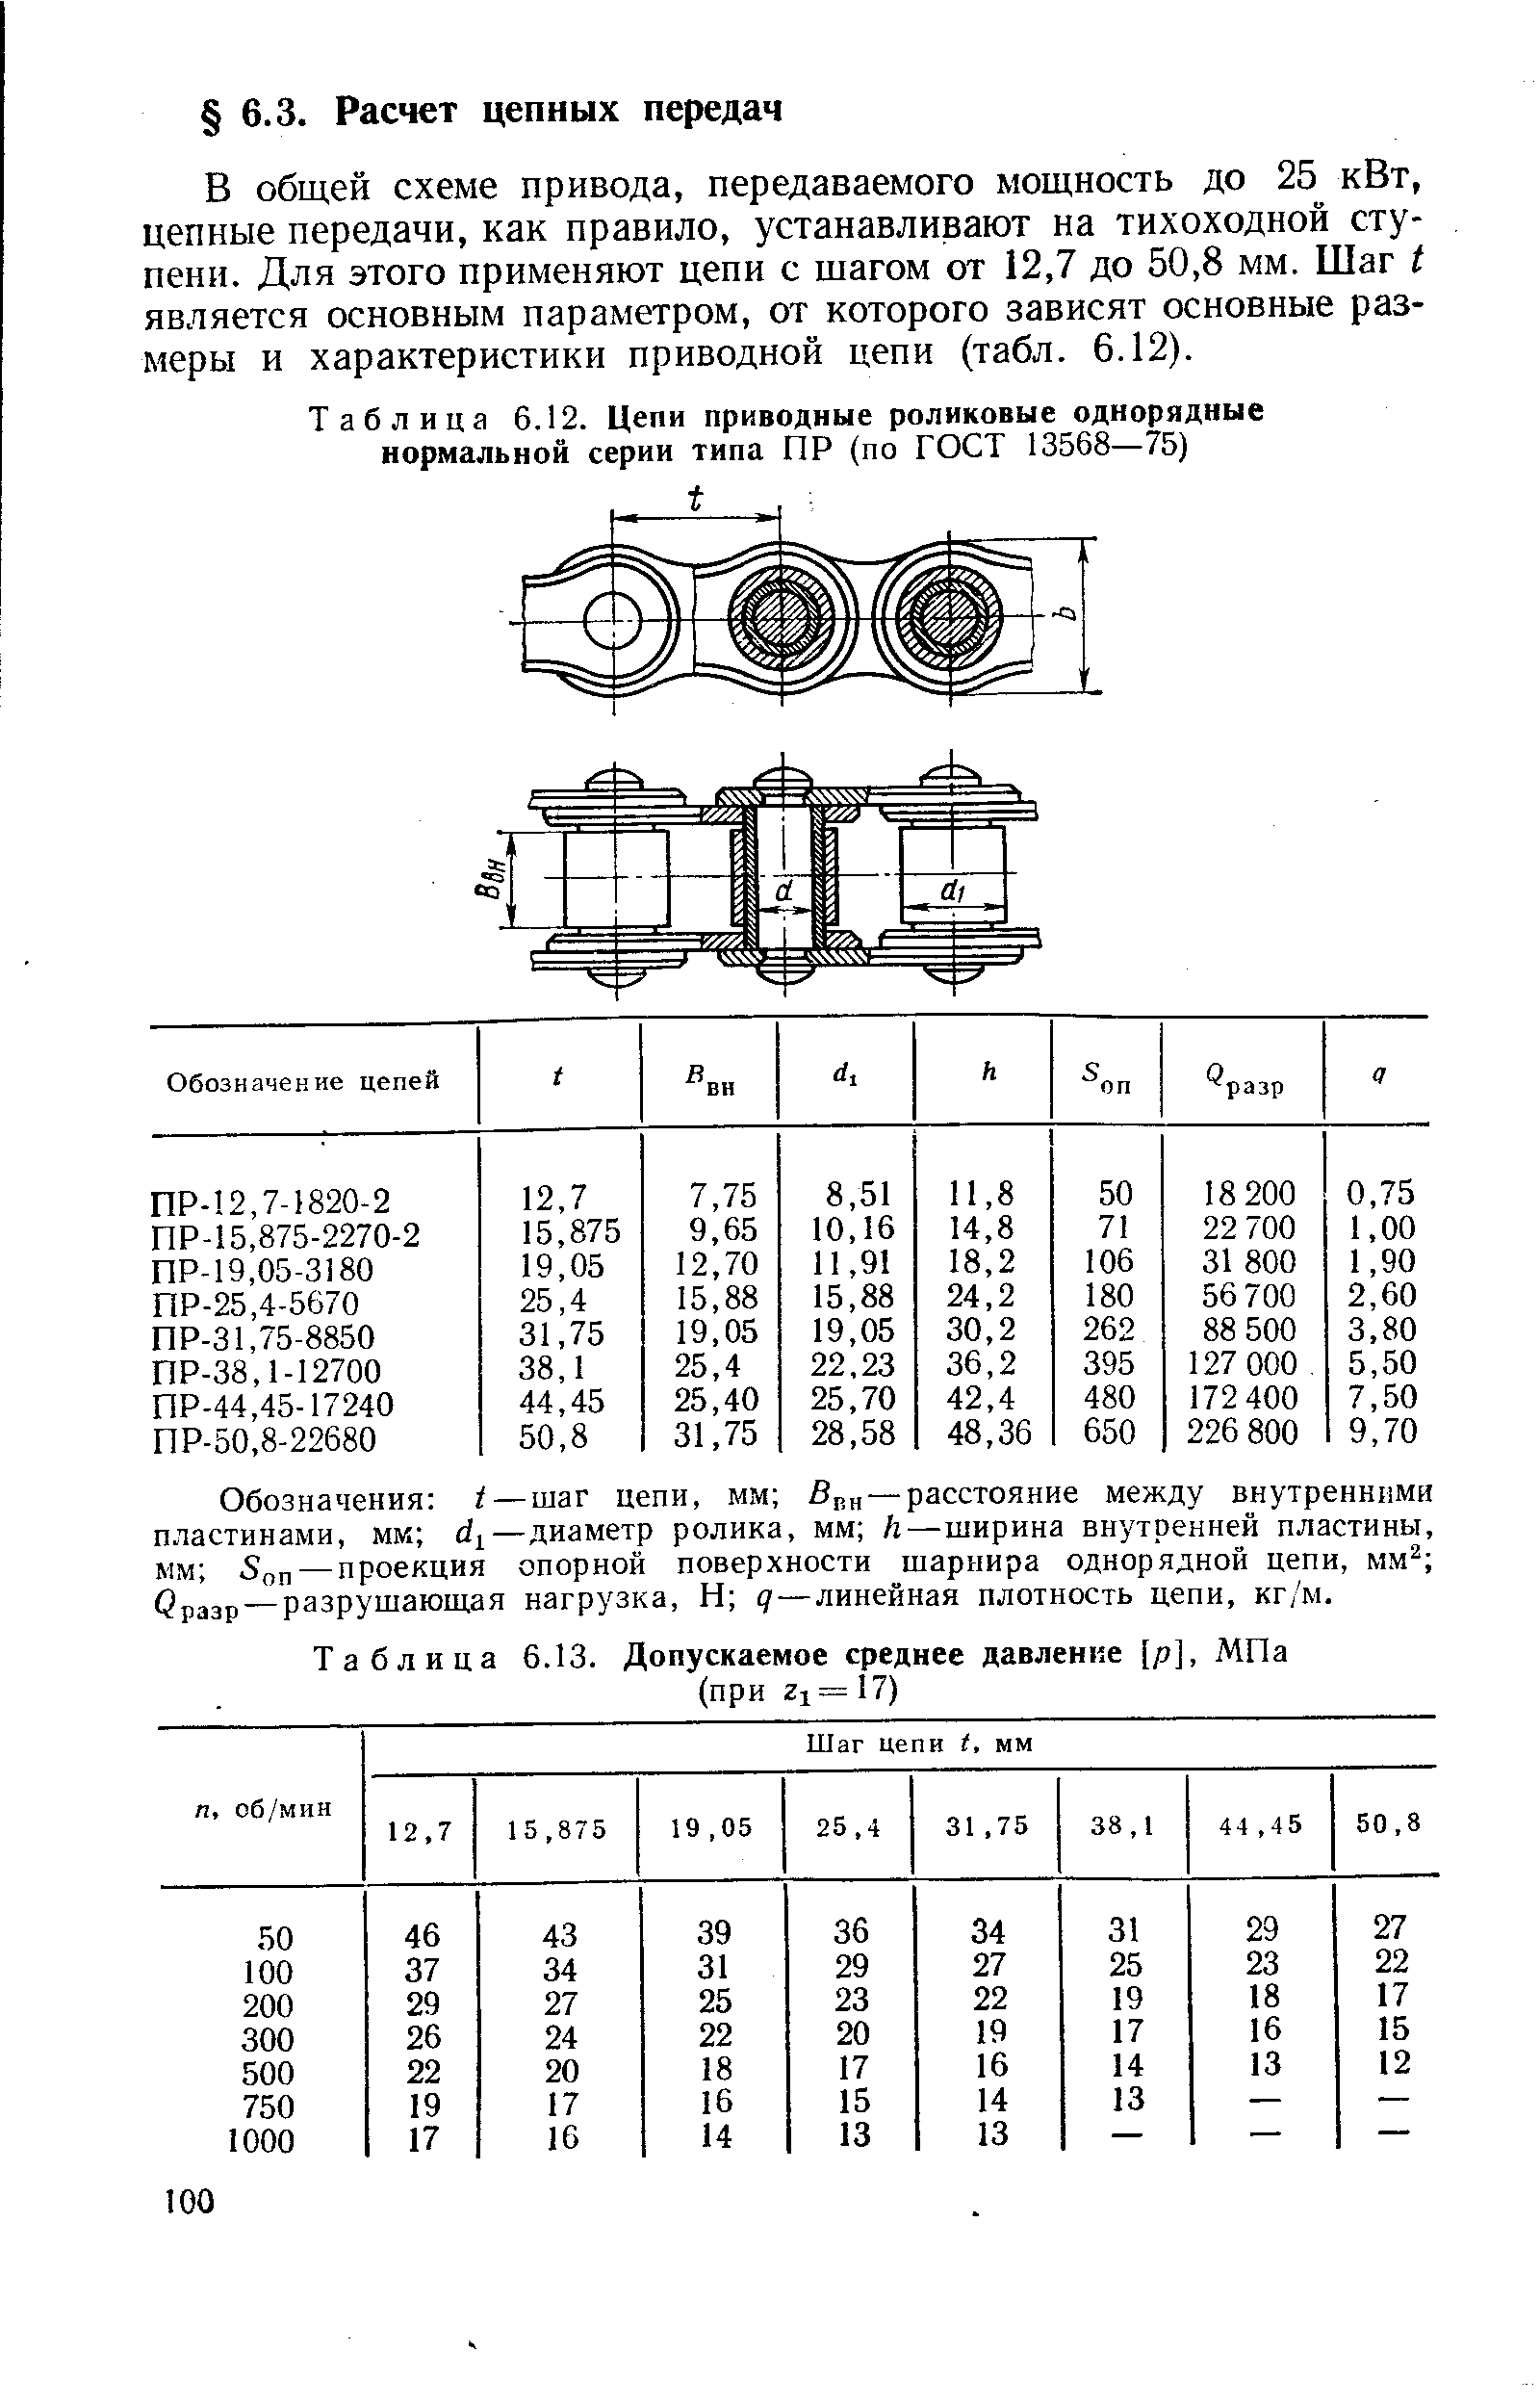 Таблица 6.12. Цепи приводные роликовые однорядные нормальной серии типа ПР (по ГОСТ 13568—75)
